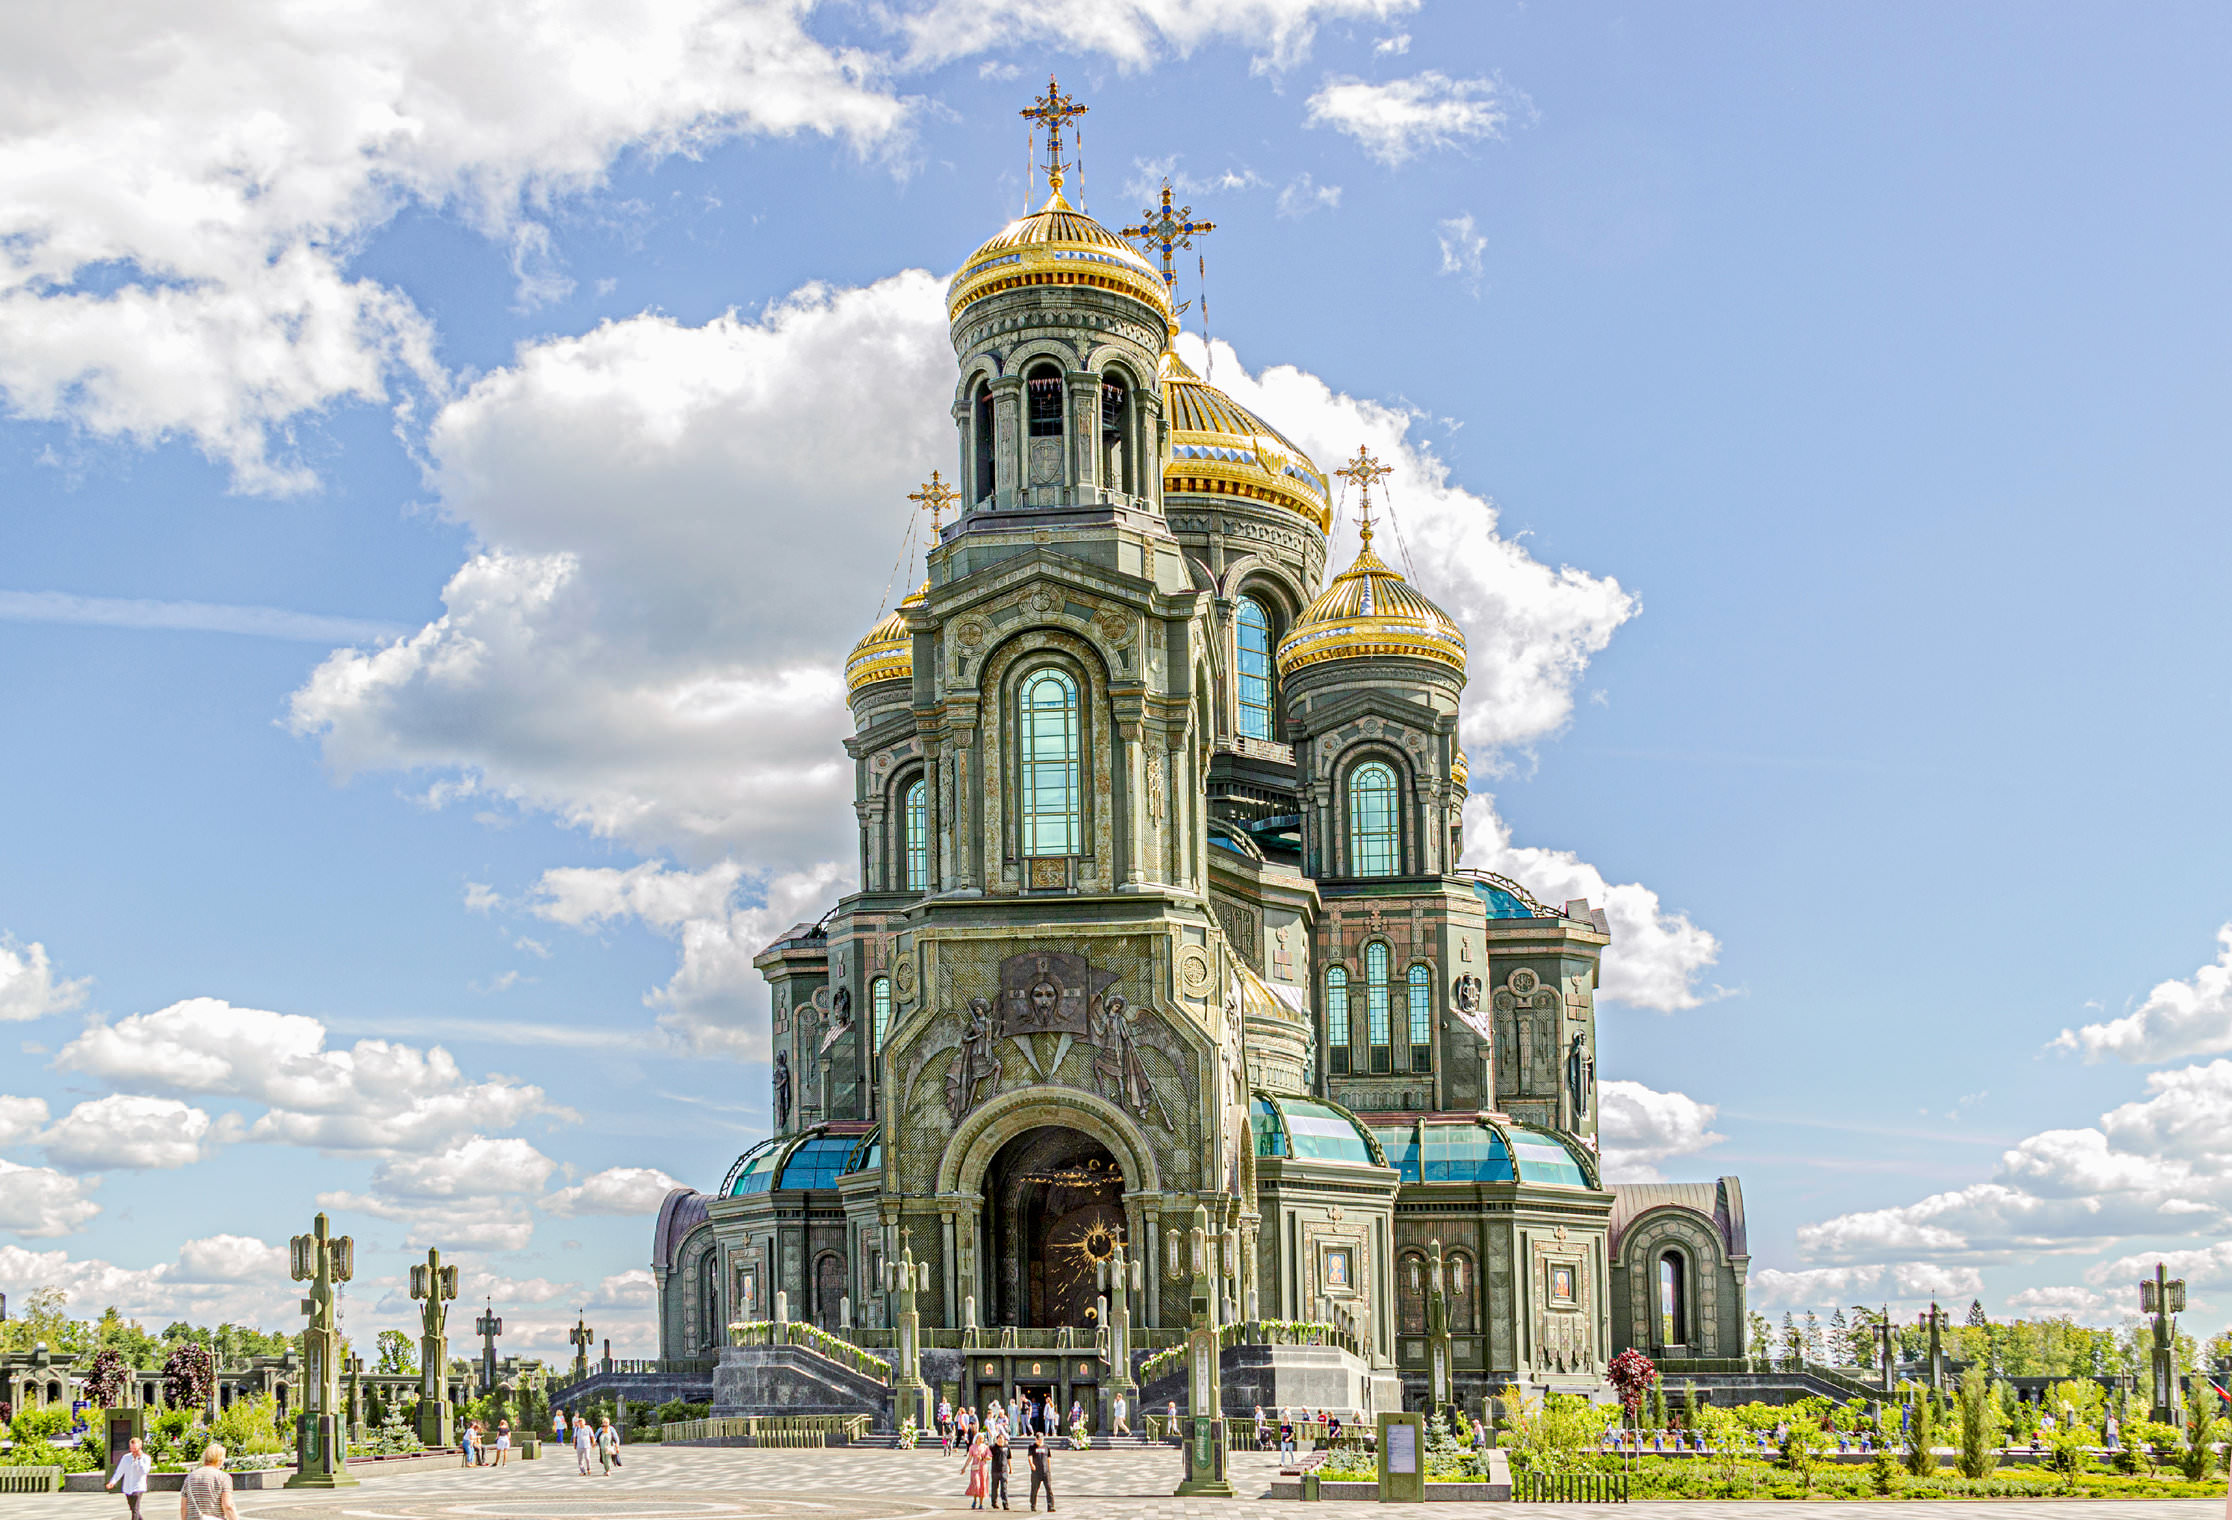 Фото главный храм вооруженных сил российской федерации